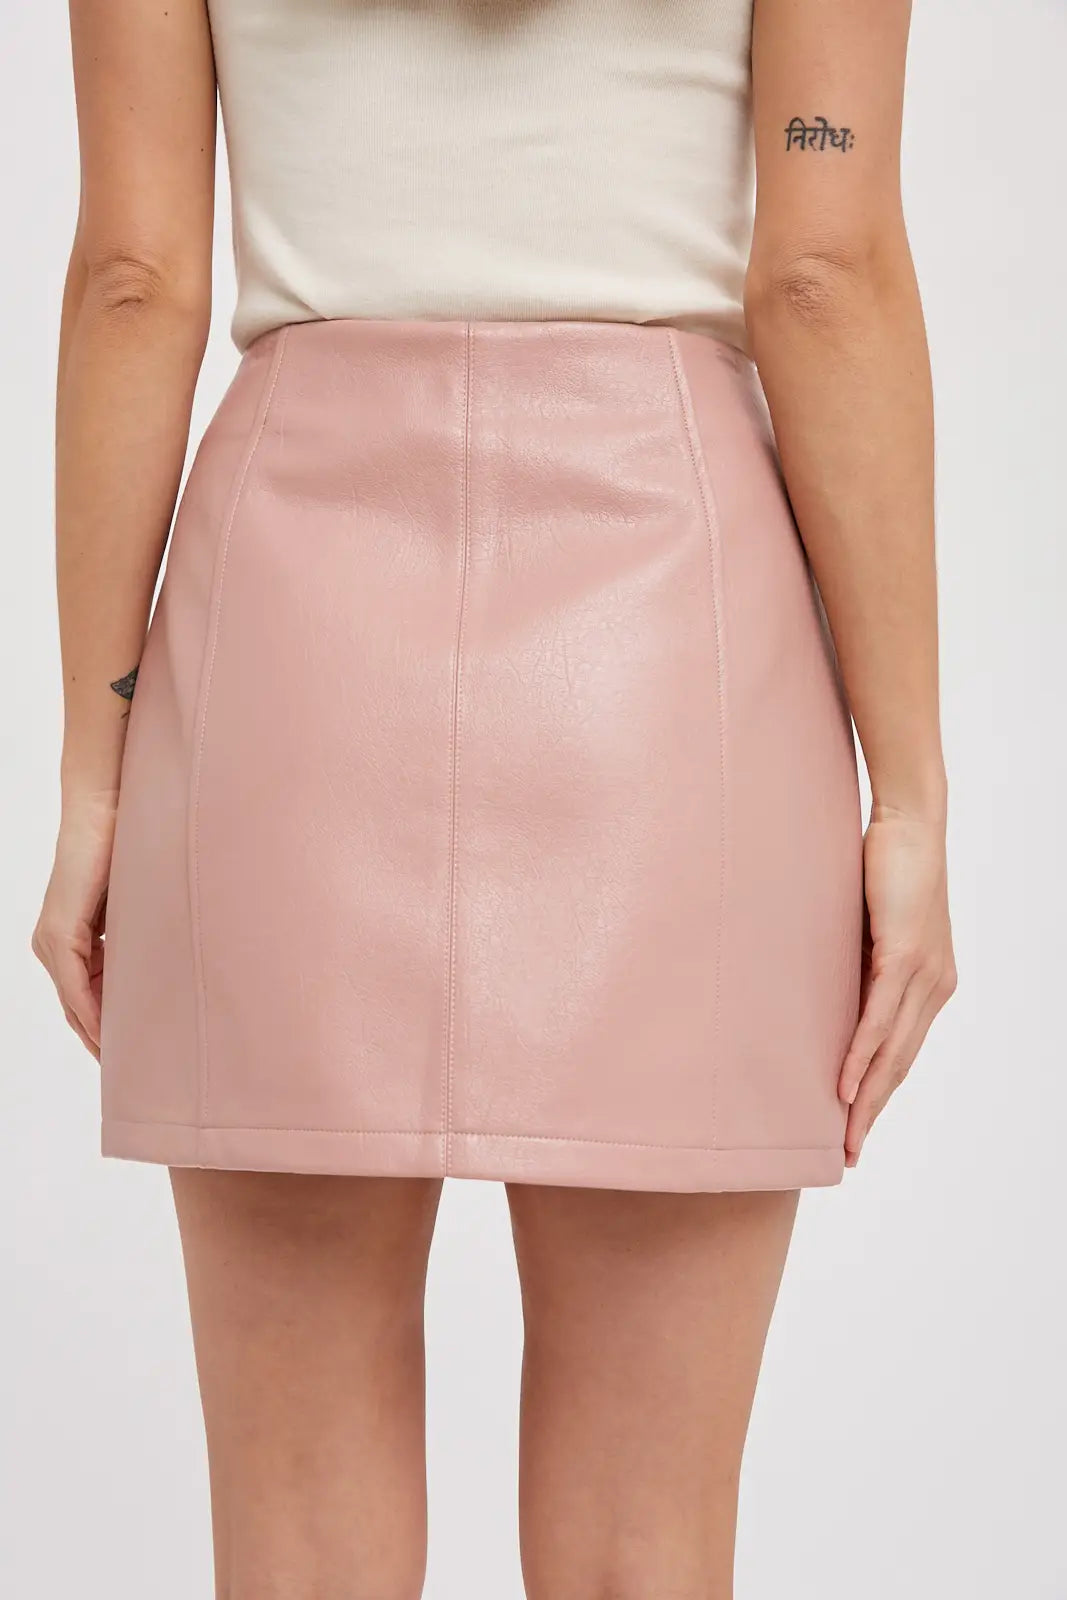 Flirty Girl Vegan Leather Mini Skirt